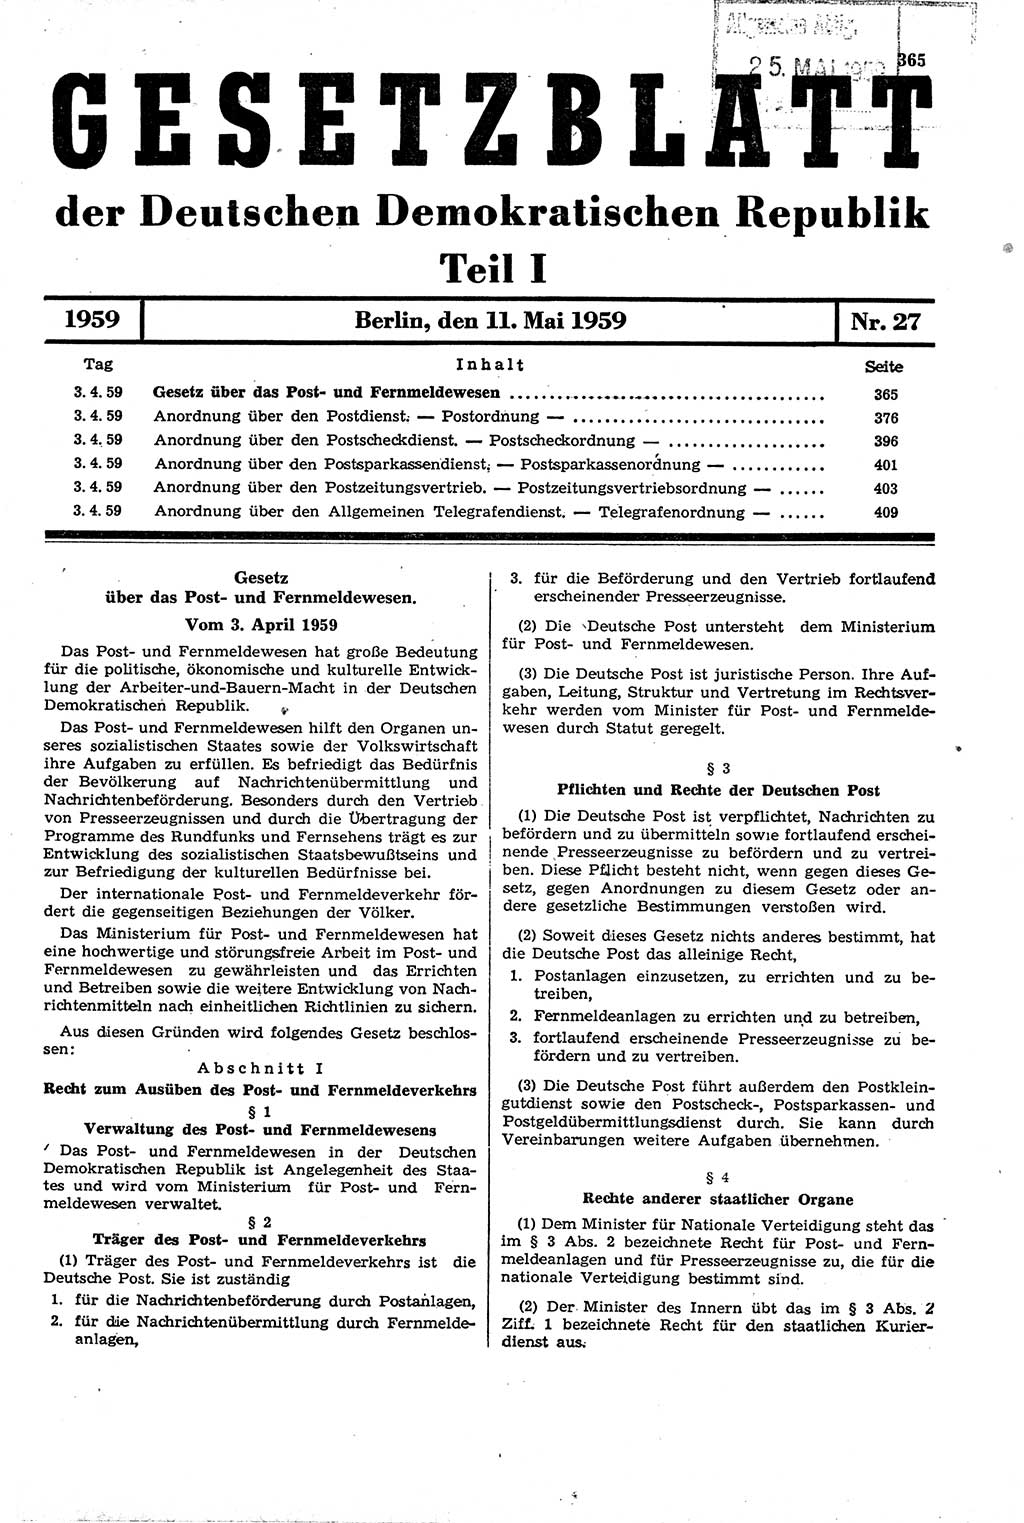 Gesetzblatt (GBl.) der Deutschen Demokratischen Republik (DDR) Teil Ⅰ 1959, Seite 365 (GBl. DDR Ⅰ 1959, S. 365)